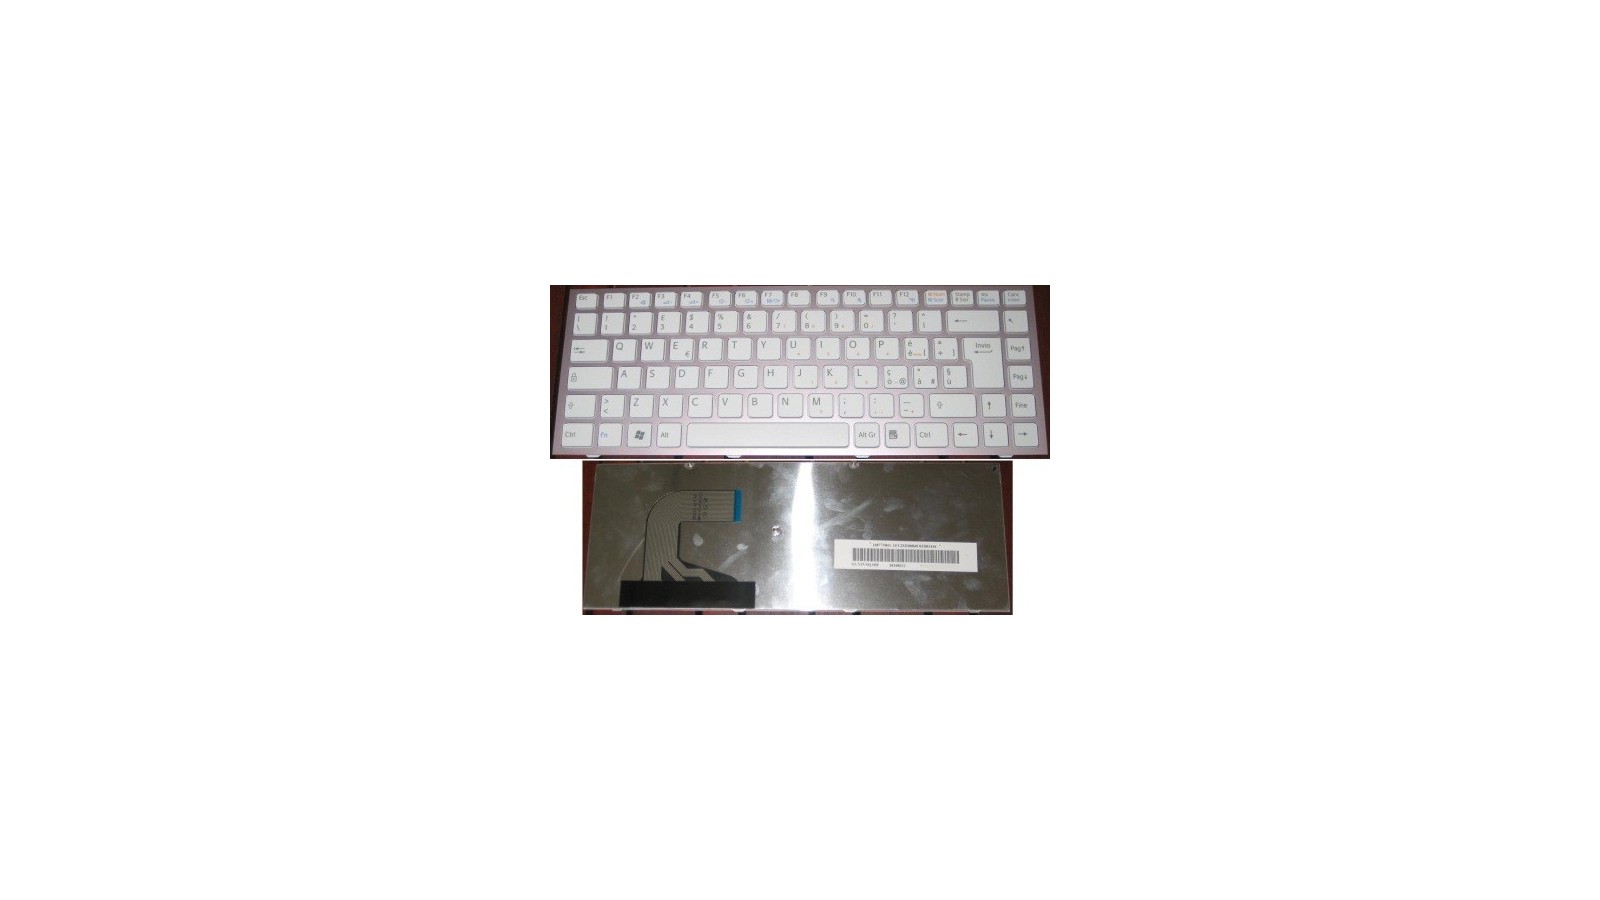 Tastiera italiana rosa con tastiera bianca compatibile con SONY VAIO VPC-S VPC-S11 VPC-S12